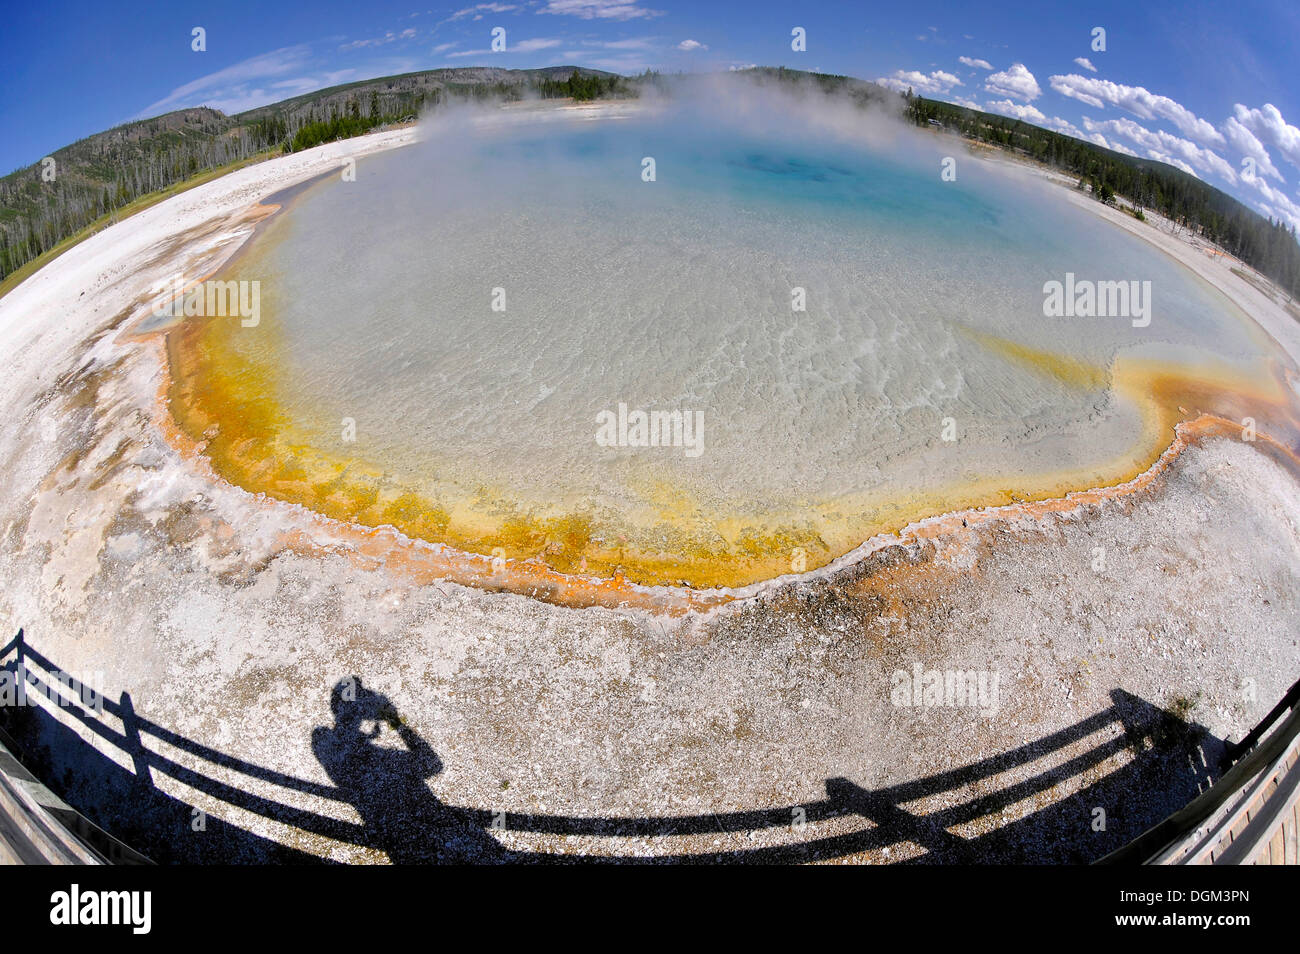 Tramonto sul lago, geyser, area di drenaggio con una passerella, colorato di batteri termofili, microrganismi, nero bacino di sabbia Foto Stock